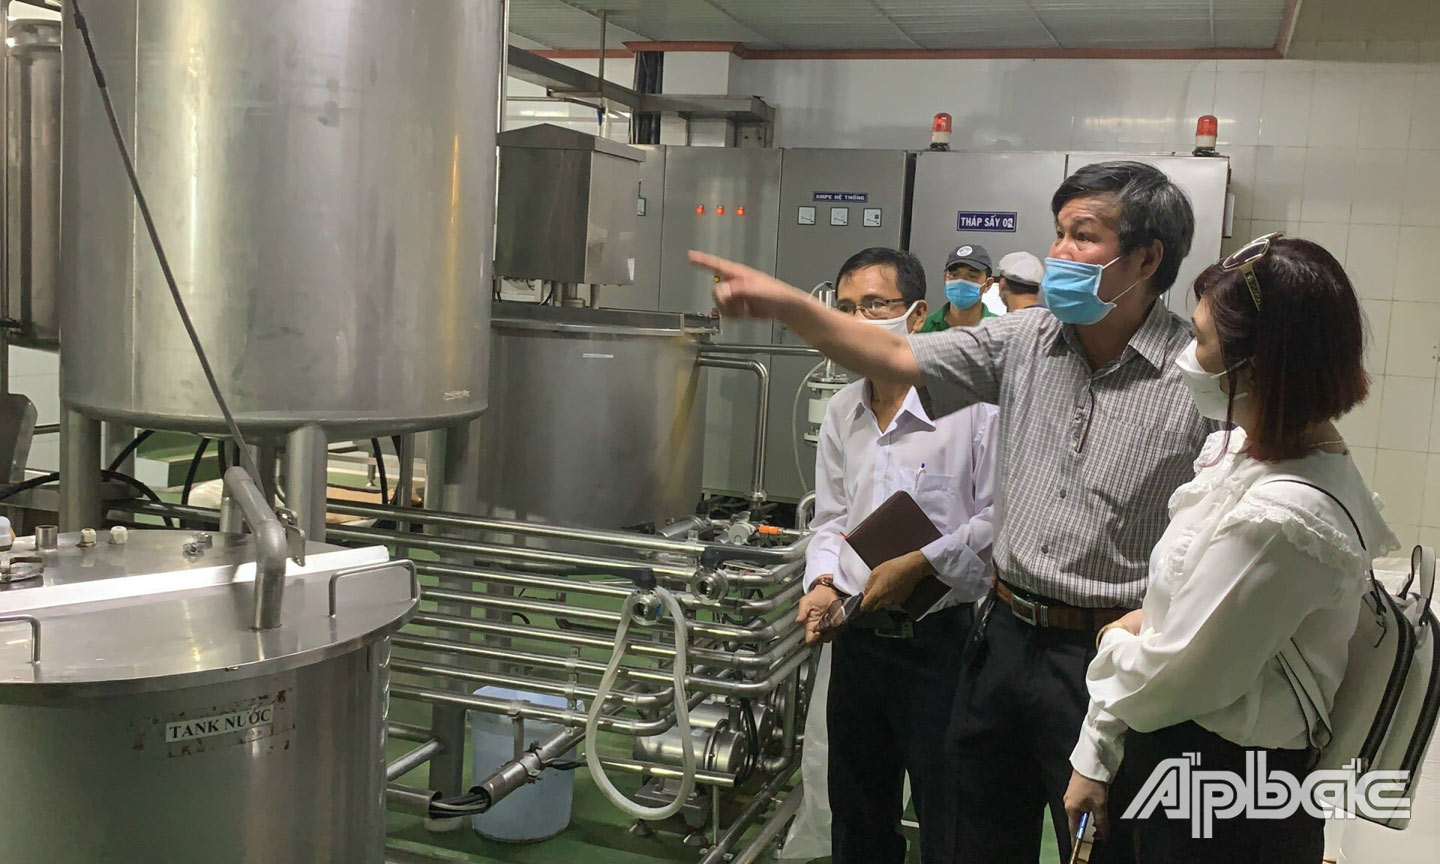 Kỹ sư Nguyễn Văn Hòa giới thiệu về dây chuyền sản xuất bột sữa dừa do anh sáng chế đoạt giải Hội thi cấp tỉnh lần thứ XIV năm 2020-2021.